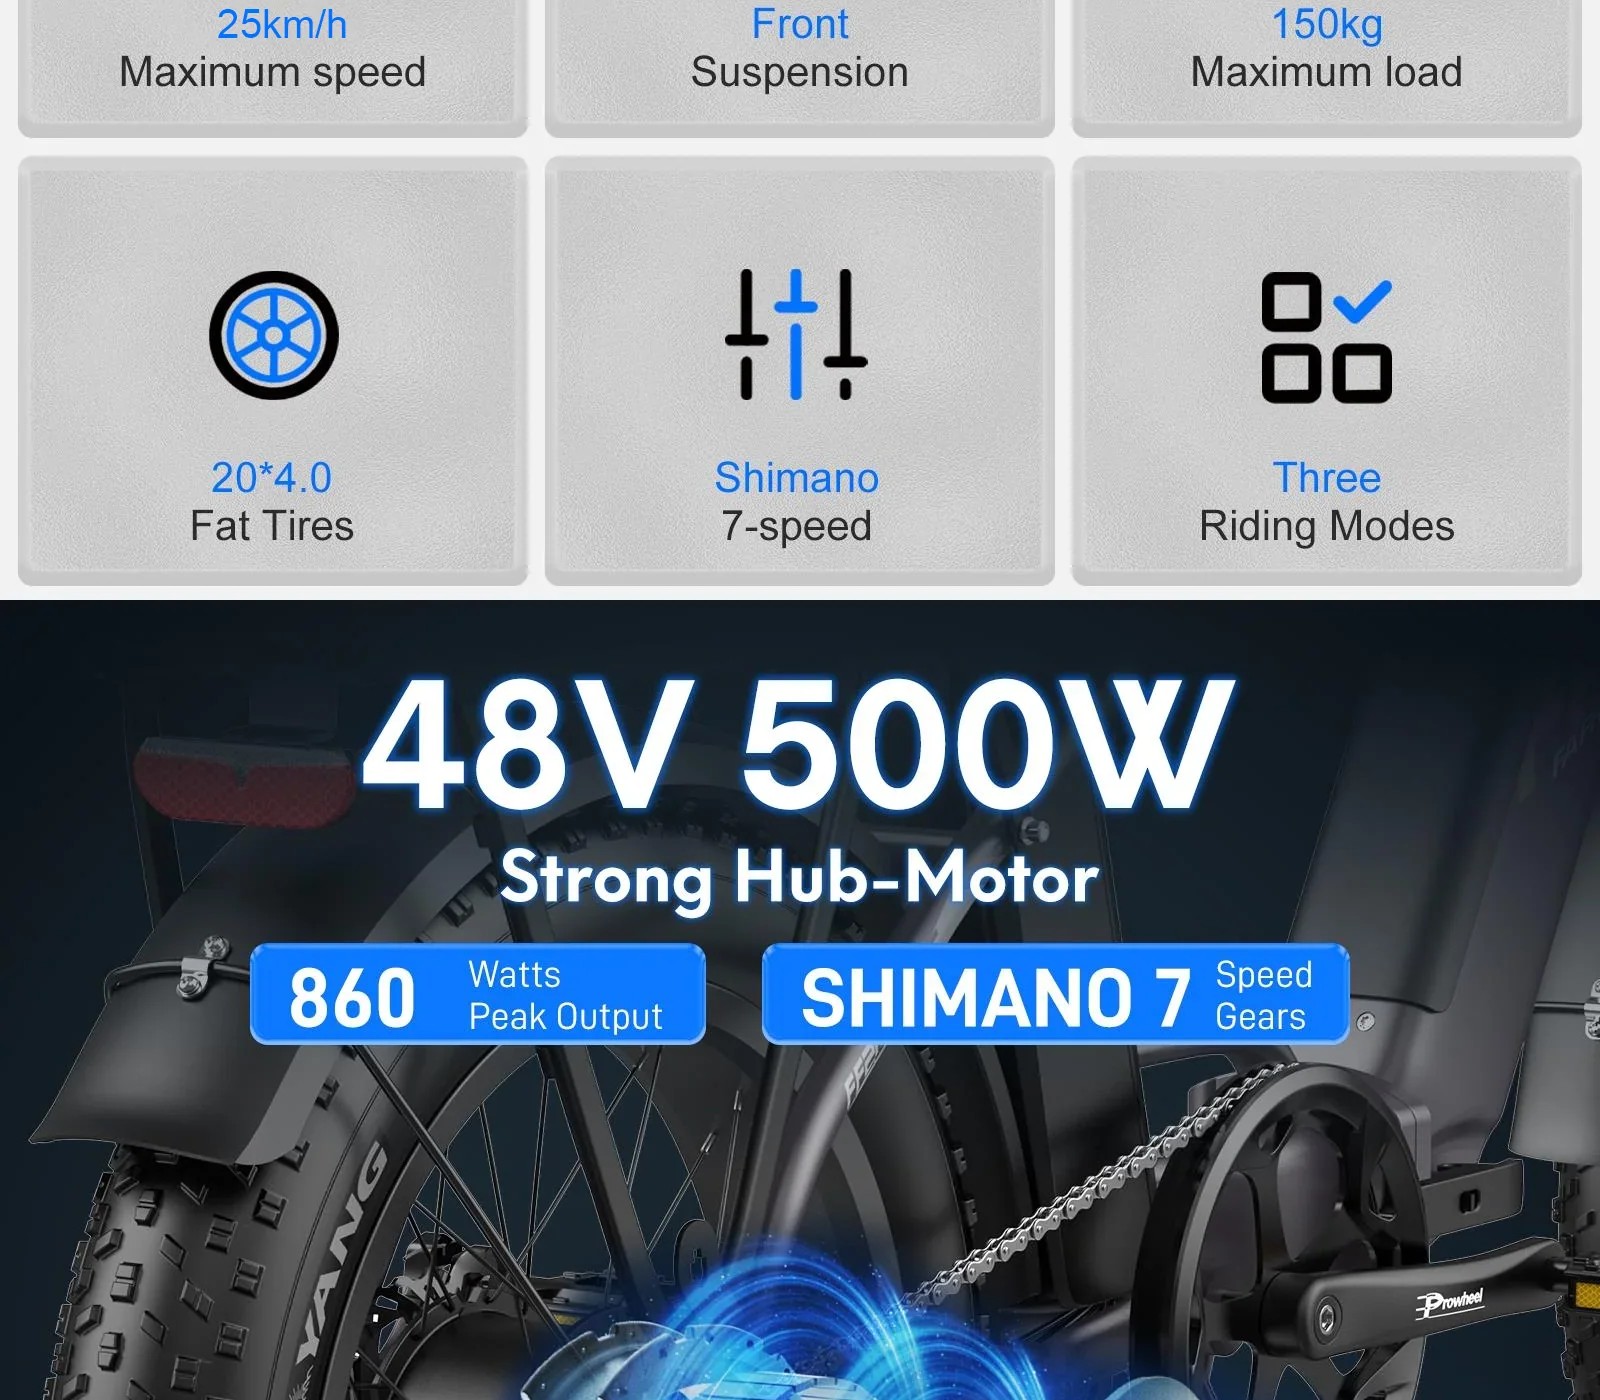 48v 500w Strong Hub-motor